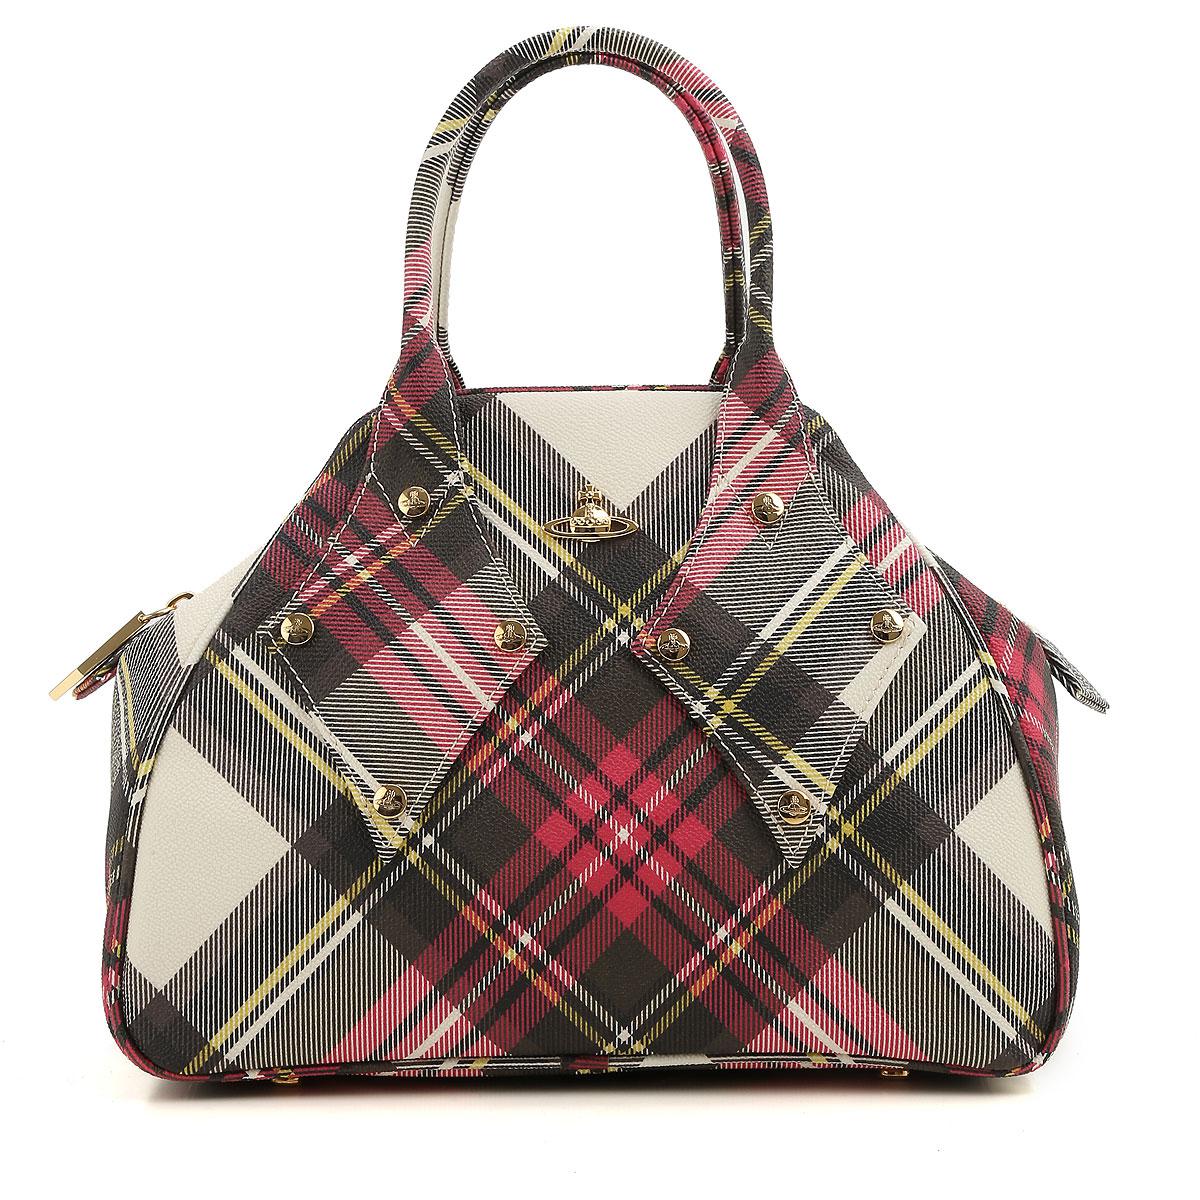 Vivienne Westwood Handbags On Sale in Red - Lyst